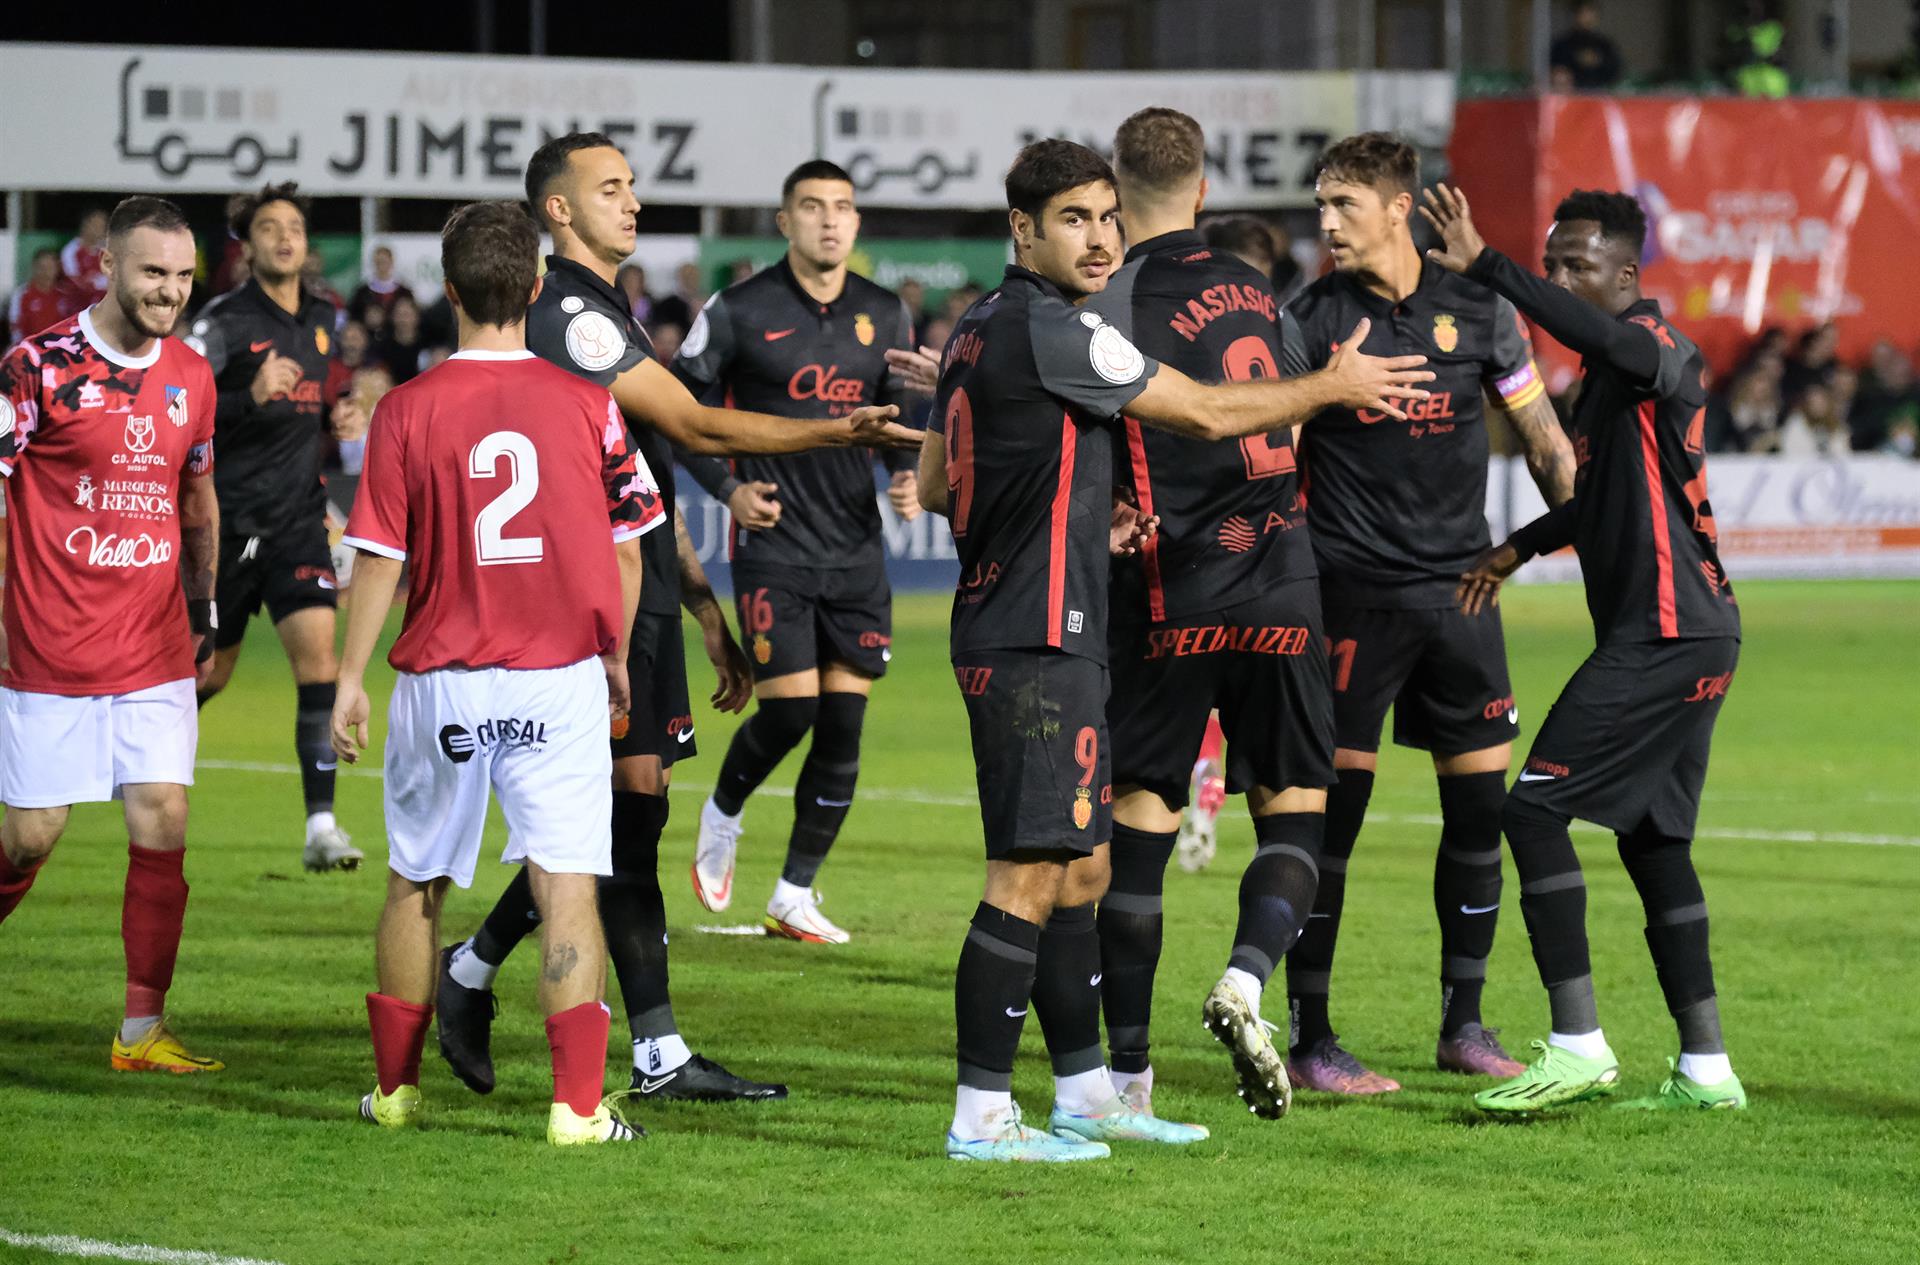 Los jugadores del Real Mallorca celebran uno de los goles del equipo durante el partido de primera eliminatoria de la Copa del Rey que disputan Autol y Real Mallorca en el campo La Planilla, en Calahorra. EFE/Raquel Manzanares.